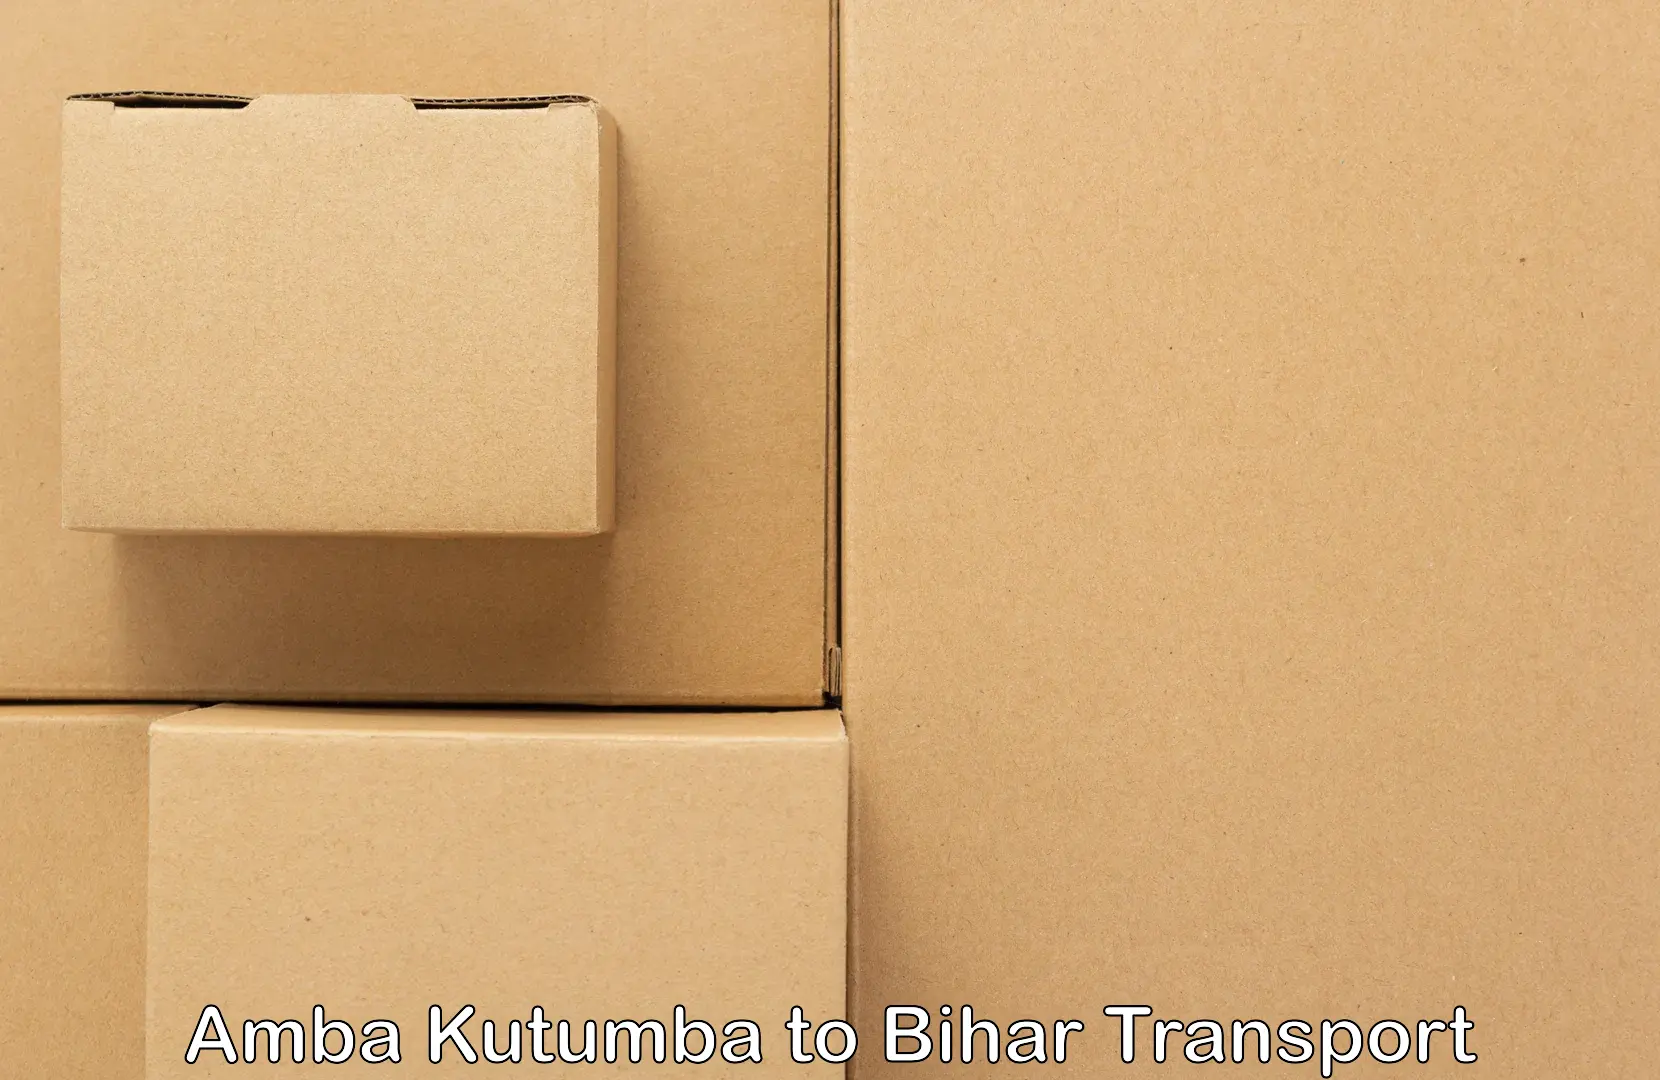 Pick up transport service Amba Kutumba to West Champaran